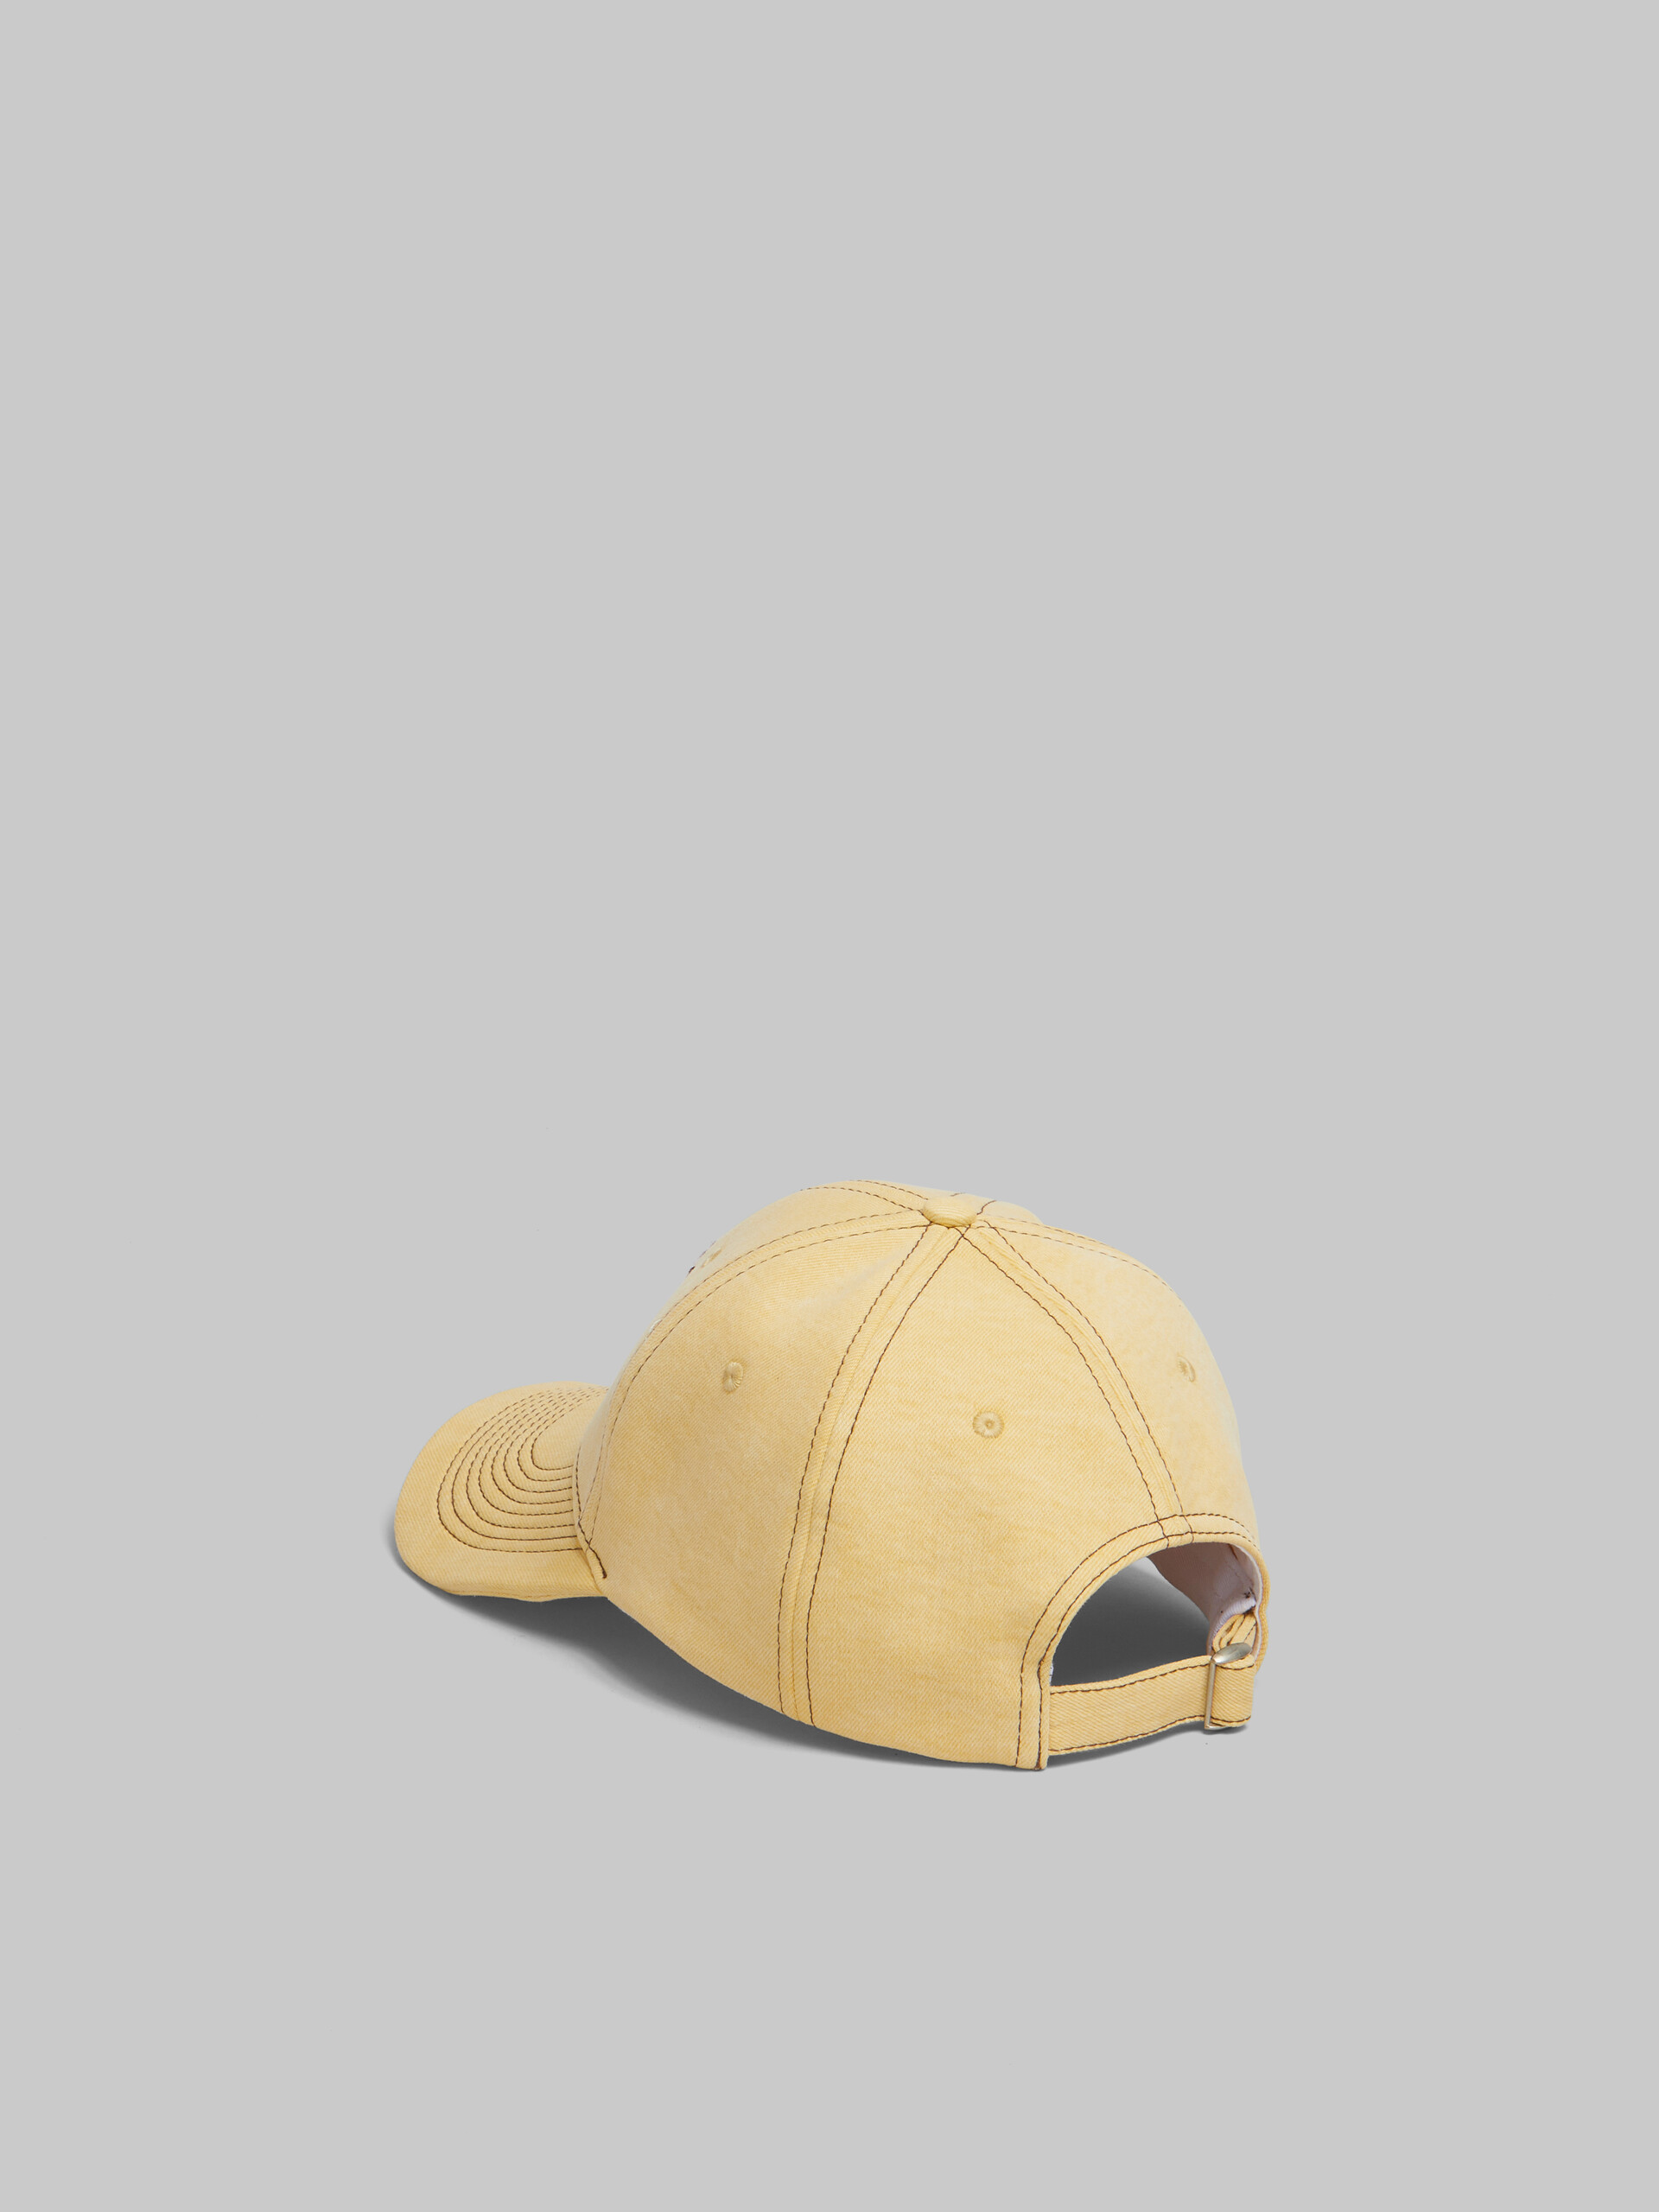 Gorra de béisbol de tejido vaquero orgánico amarilla con pespuntes Marni - Sombrero - Image 3